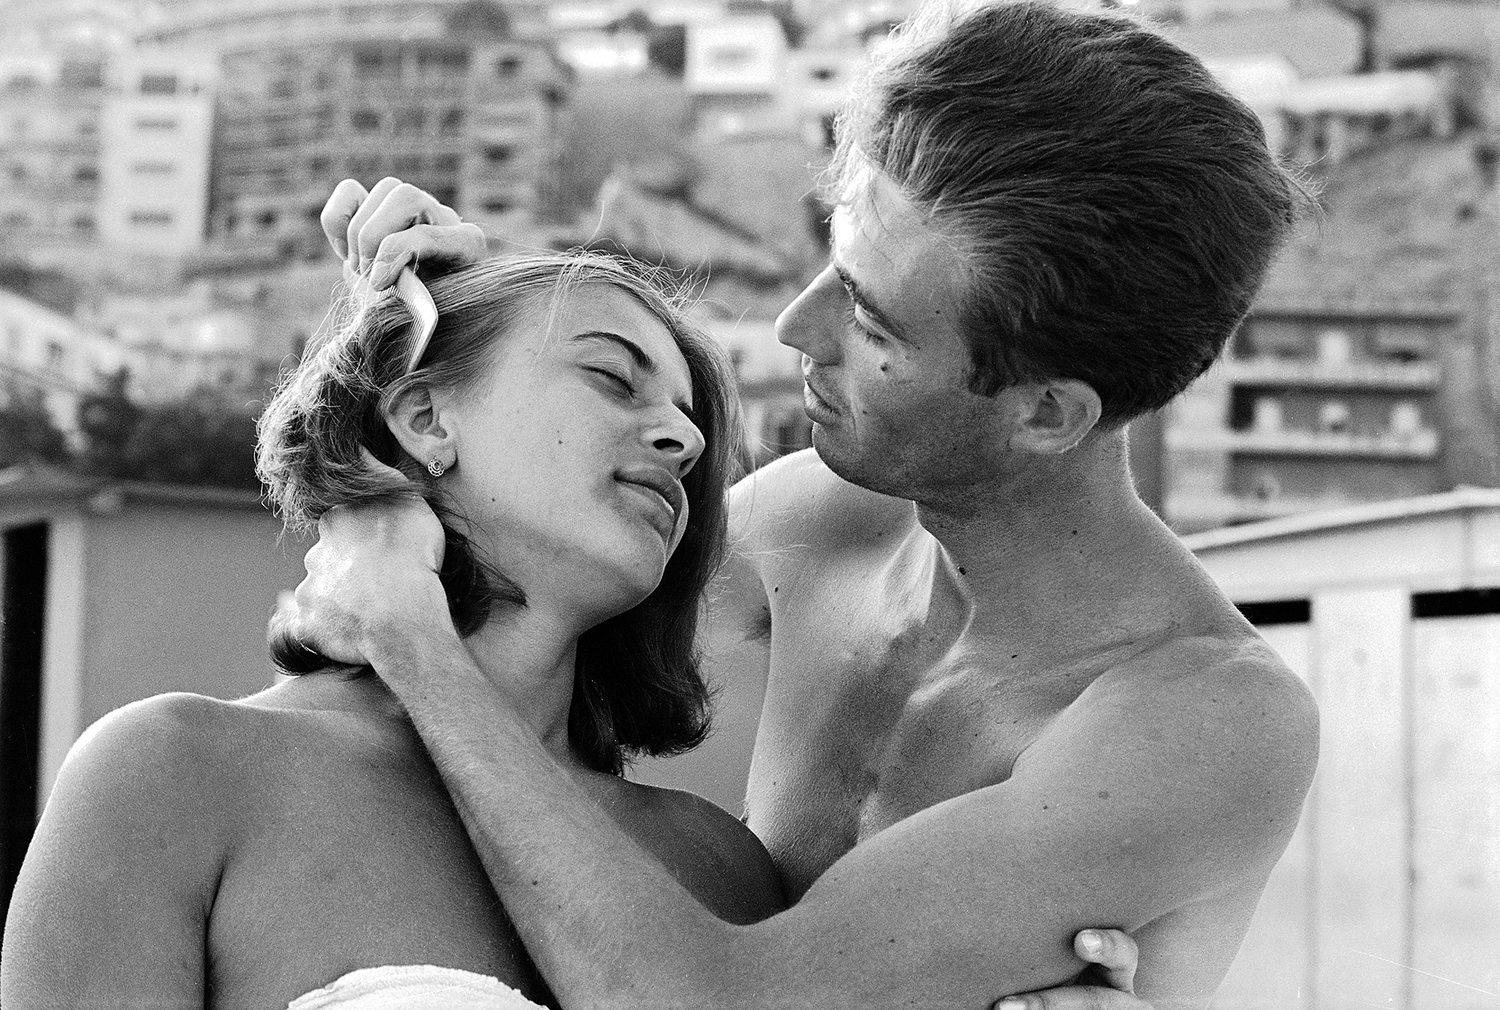 An Italian man combs his girlfriend's hair, 1963.